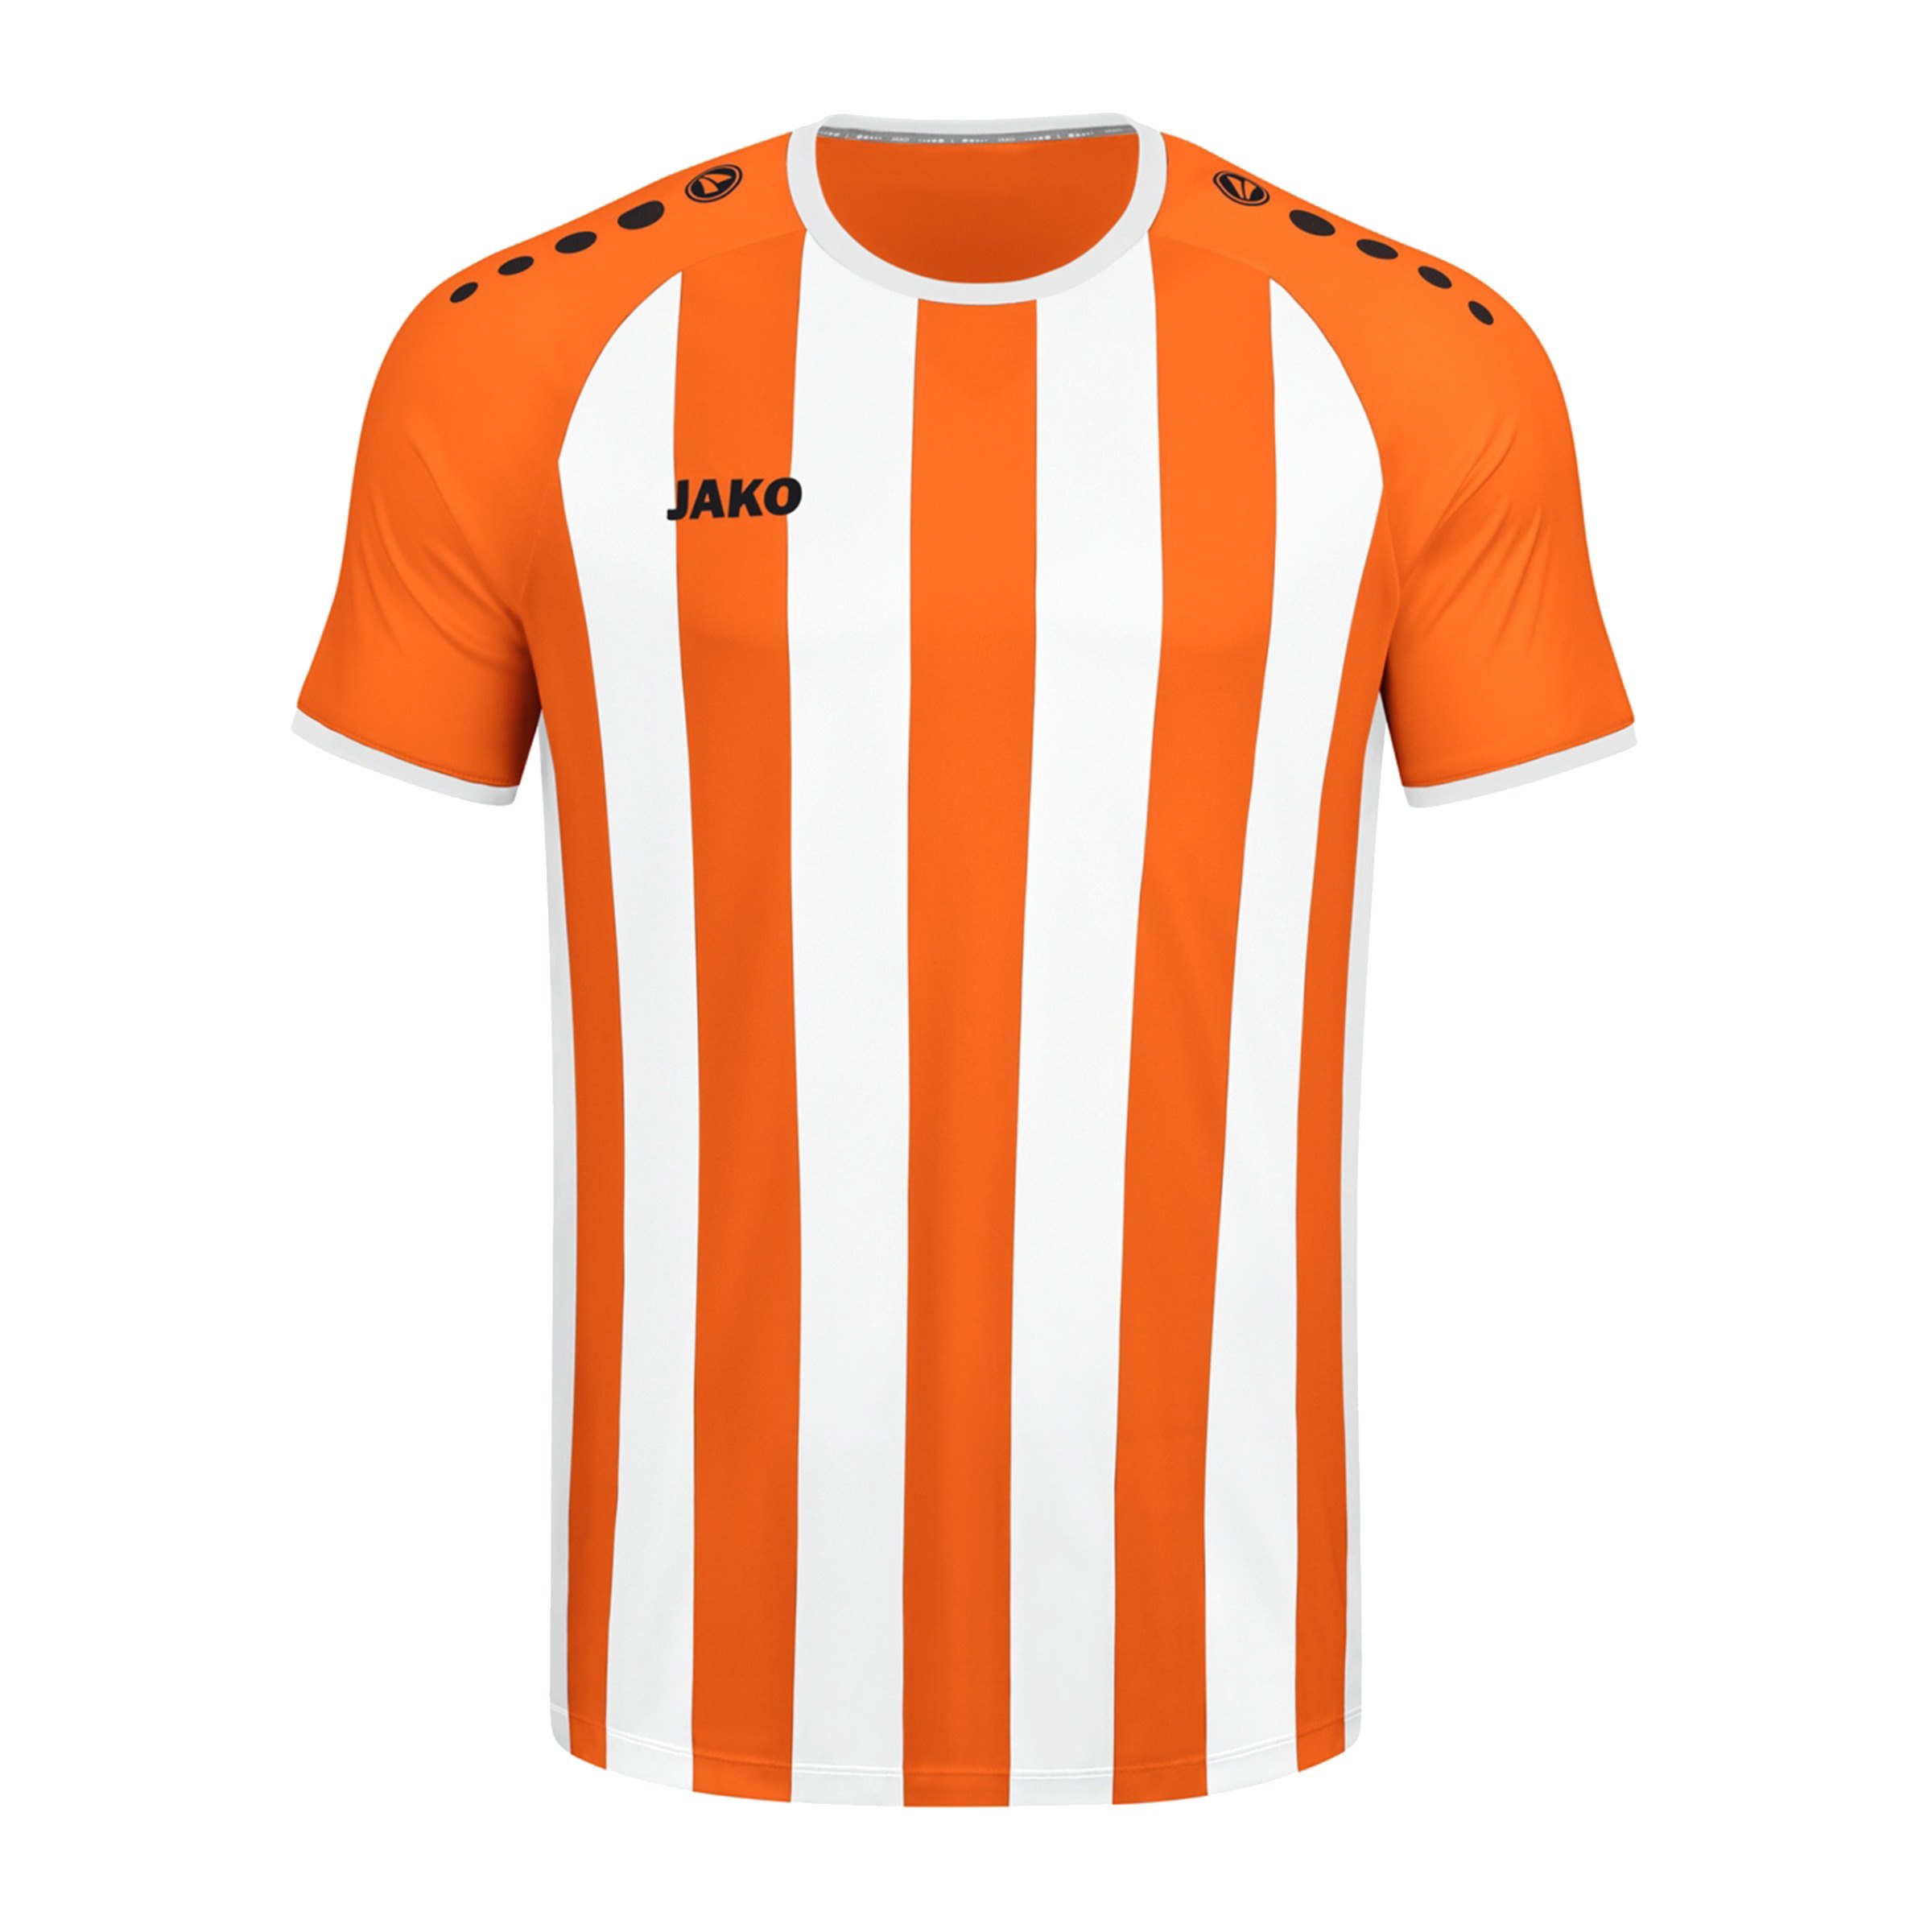 Fußballsocken / Stutzen - Fußballbekleidung Kinder (Farbe: Orange